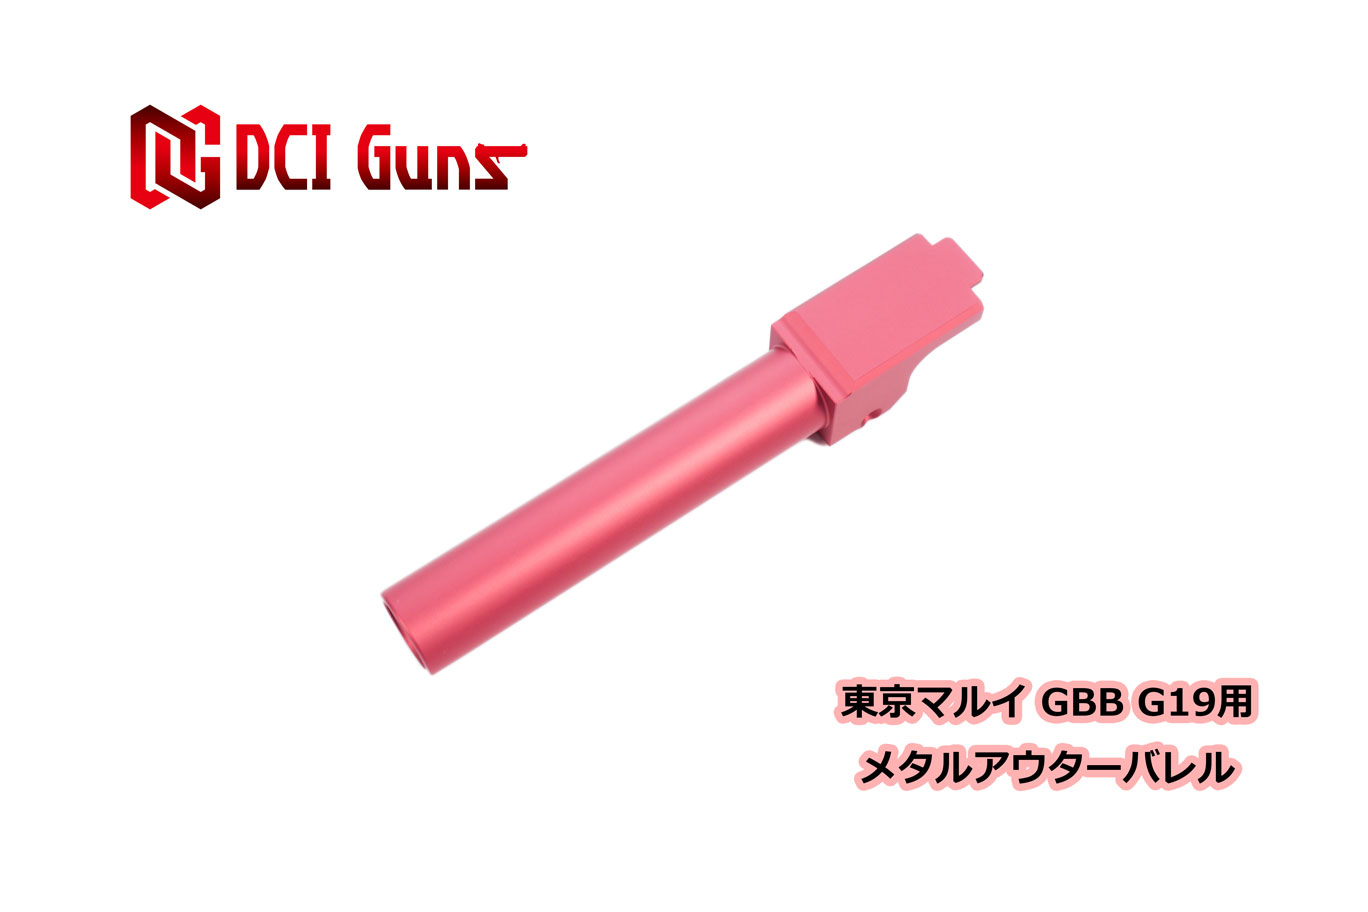 DCI Guns 東京マルイ G19用11mm正ネジメタルアウターバレル RED レッド 赤 エアガン エアーガン ガスガン ブローバック カスタム サバゲー サバイバルゲーム サイレンサー トレーサー